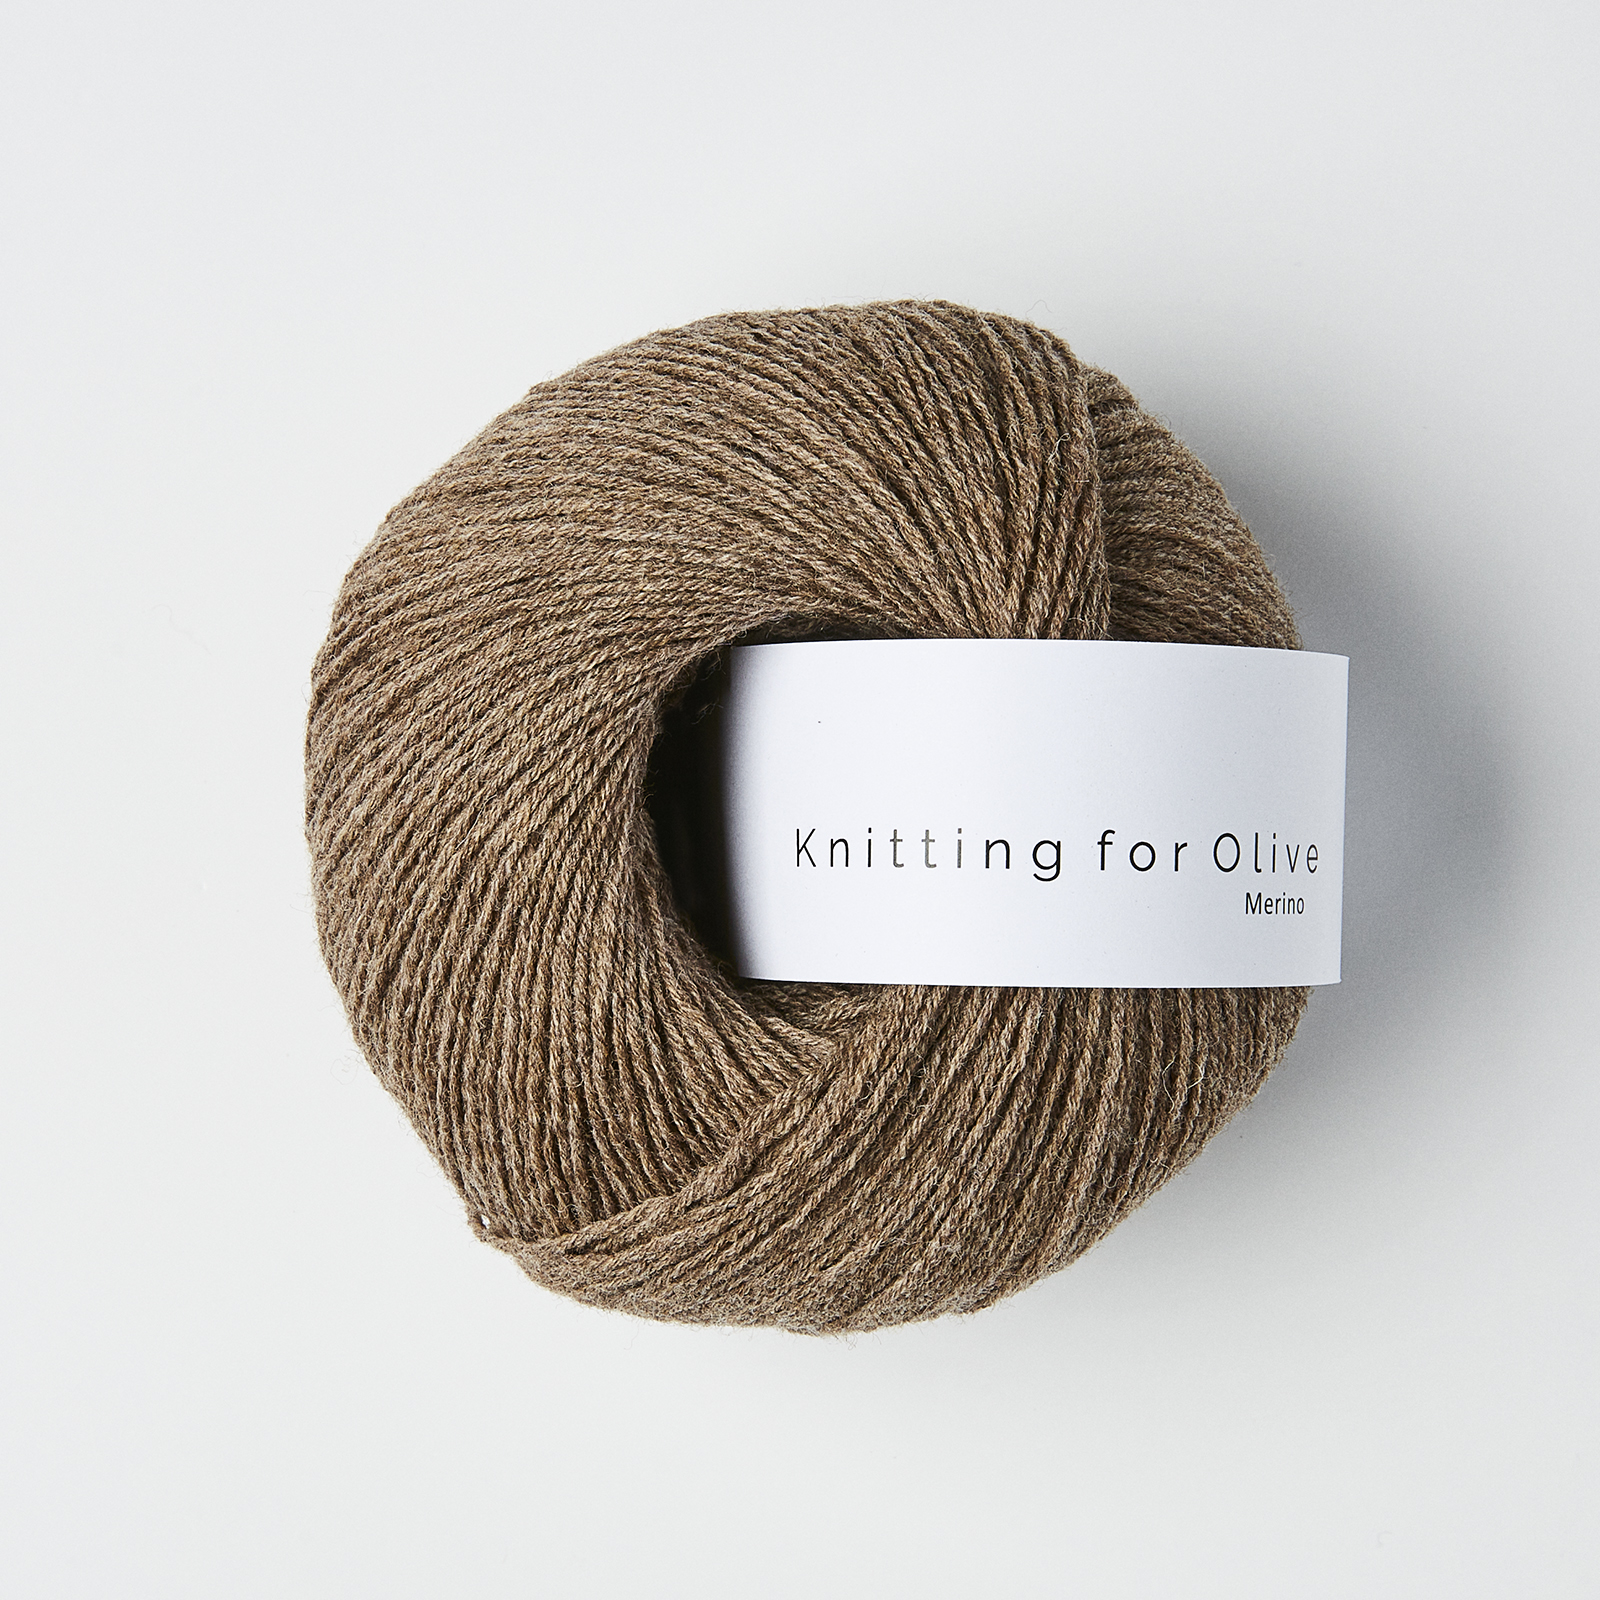 Merino (Knitting for Olive): hazel